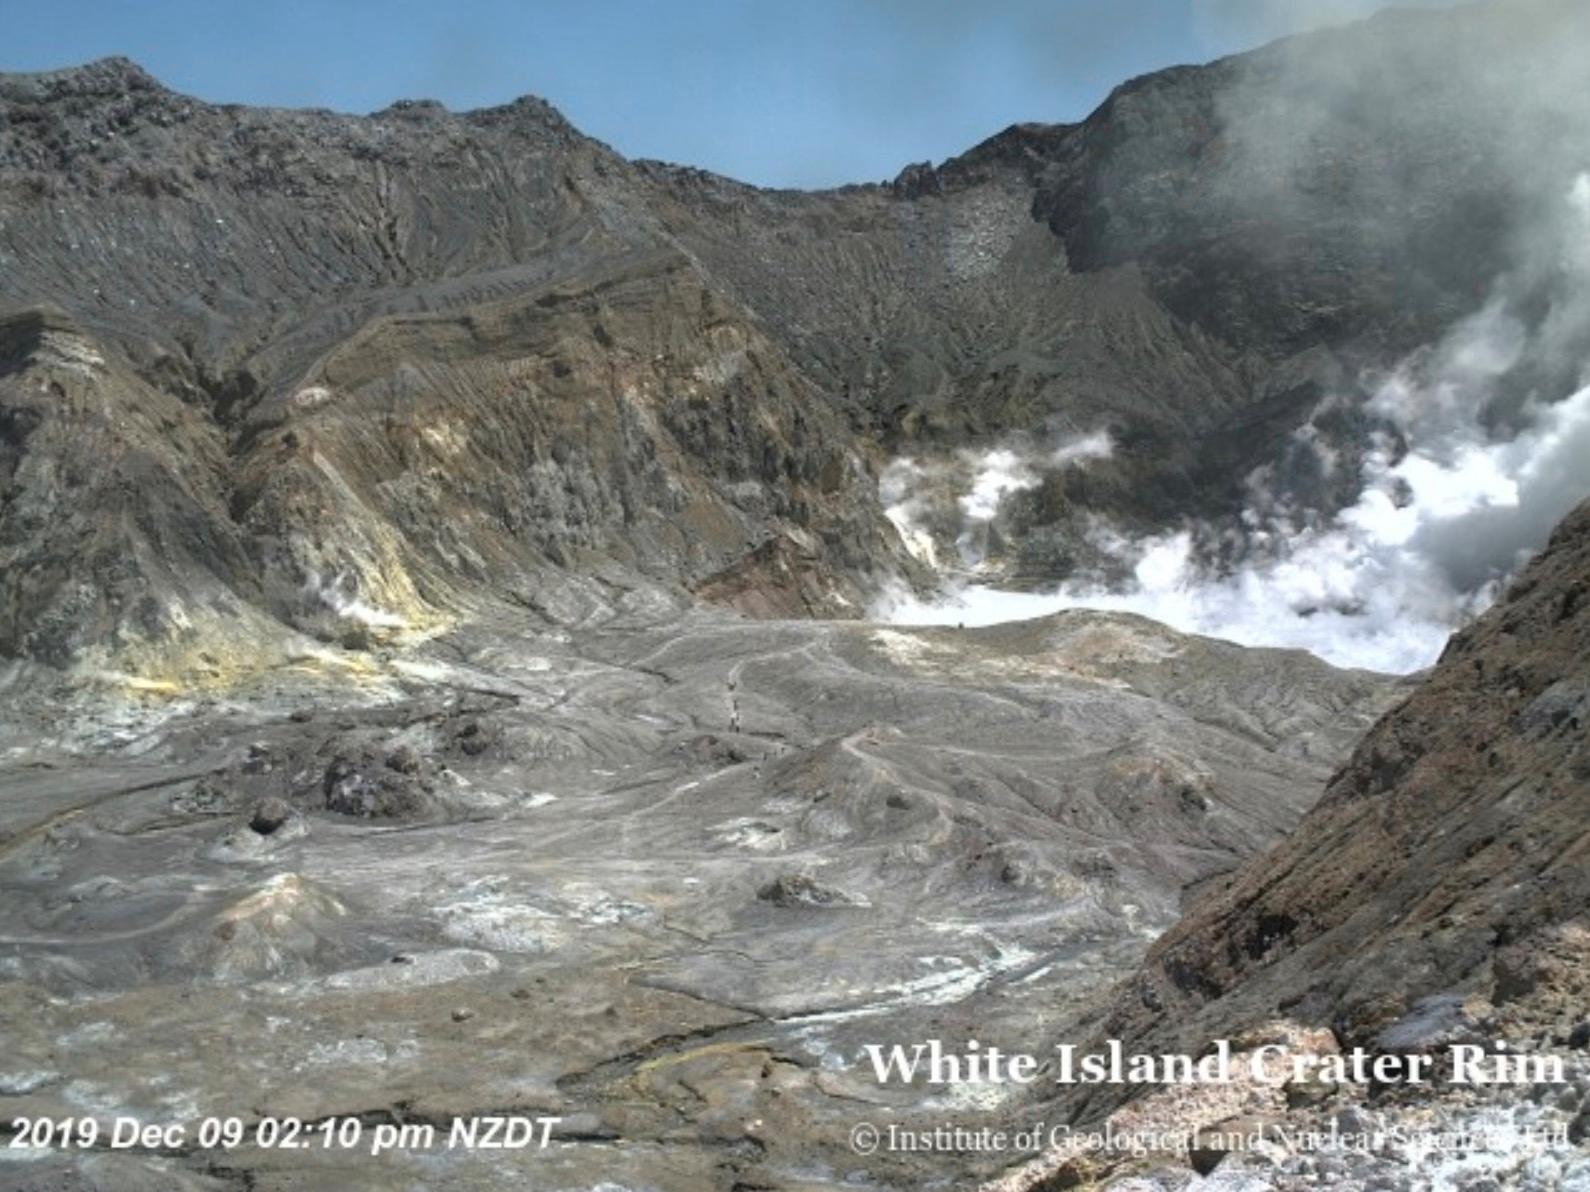 02.10: Webbkameran visar hur människor går nere i kratern.